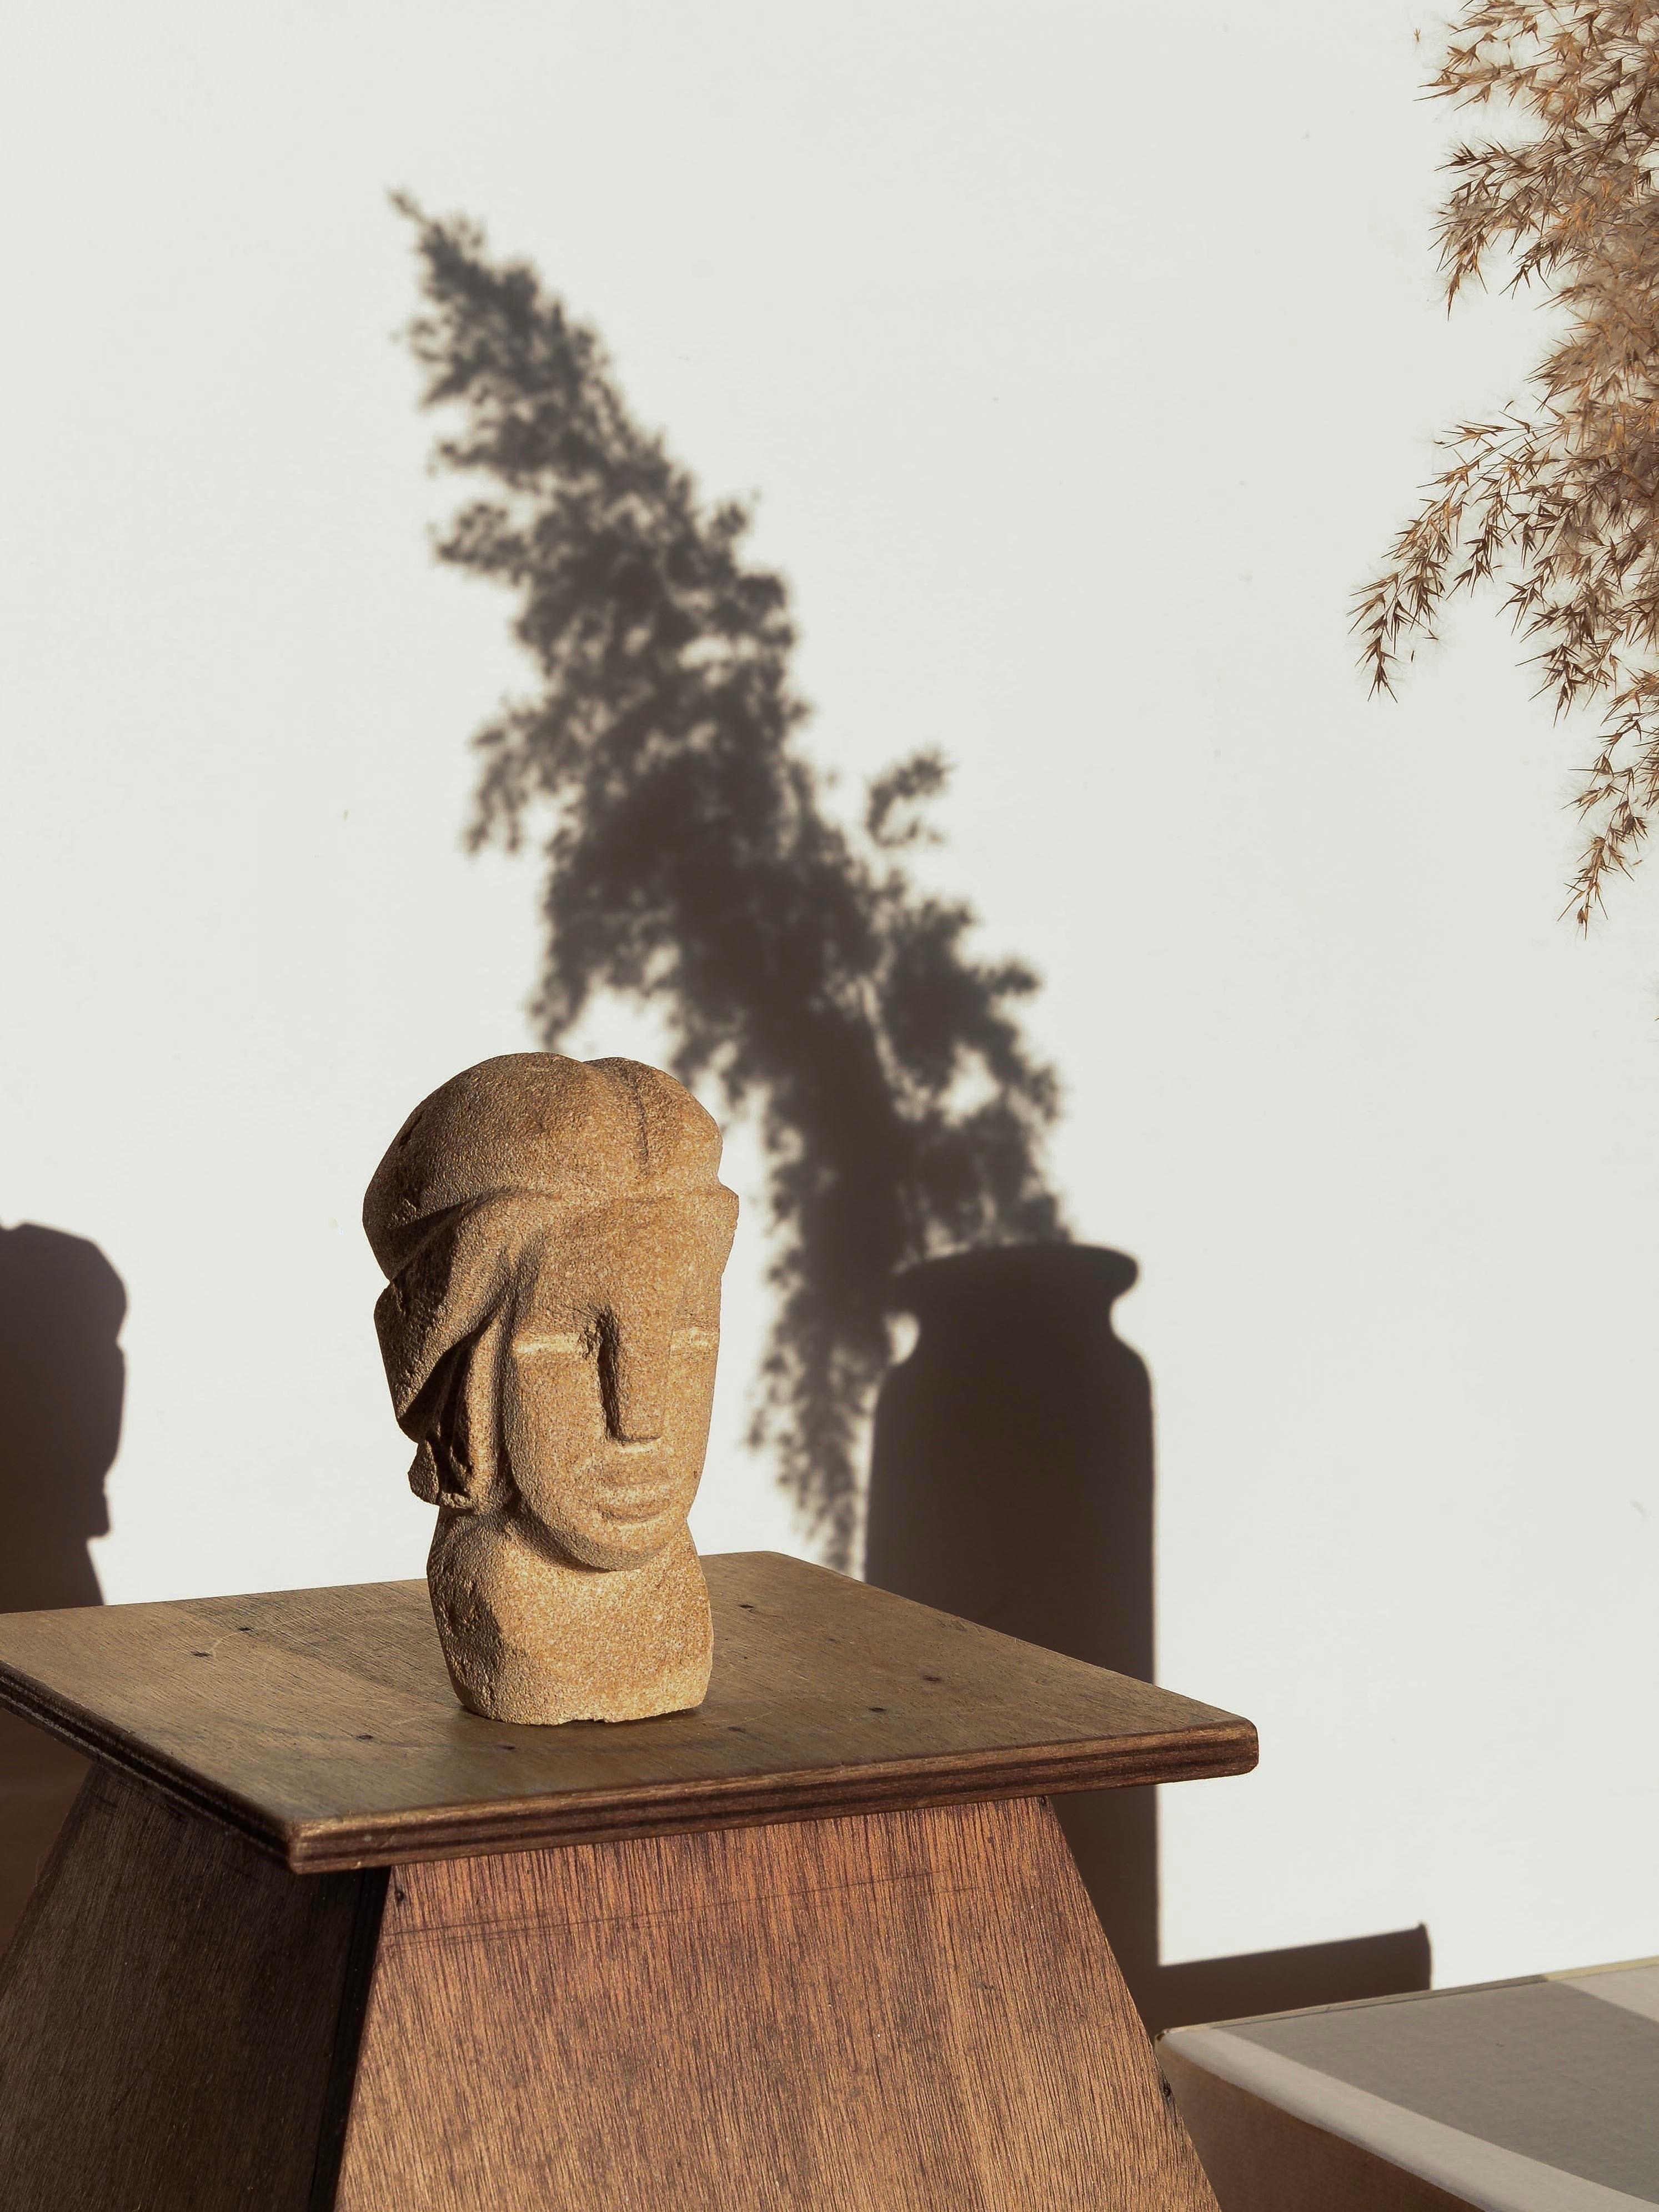 Kalksteinskulptur eines rätselhaften und sehr eleganten Gesichts, aufwändig geschnitzt, Frankreich, CIRCA 1970. Die männlich anmutenden Gesichtszüge treten aus dem Stein durch Linien hervor, die in einer eher grafischen und stromlinienförmigen Weise